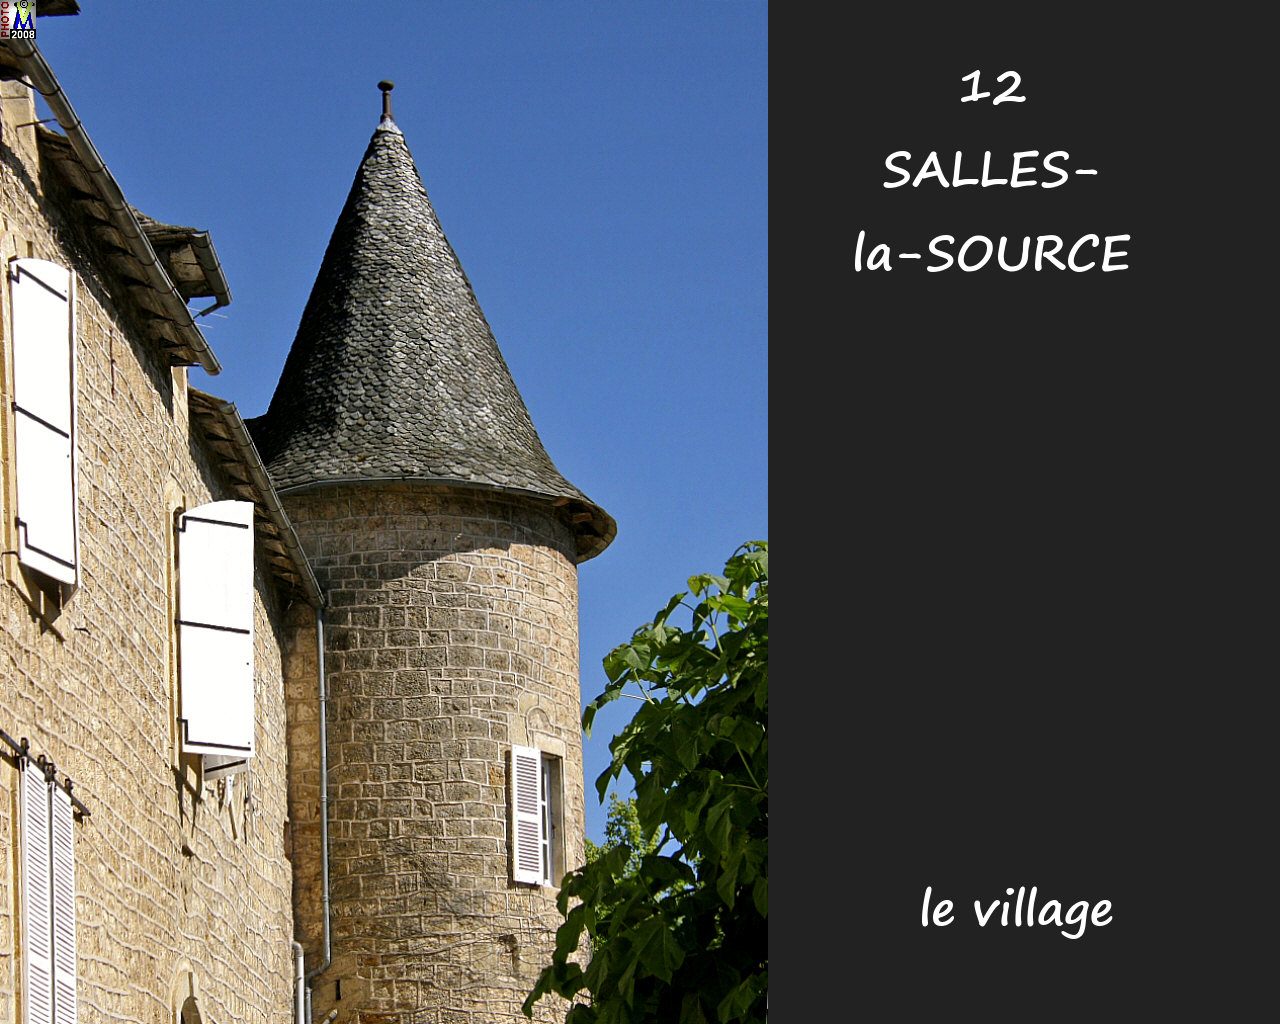 12SALLES-SOURCE_village_122.jpg